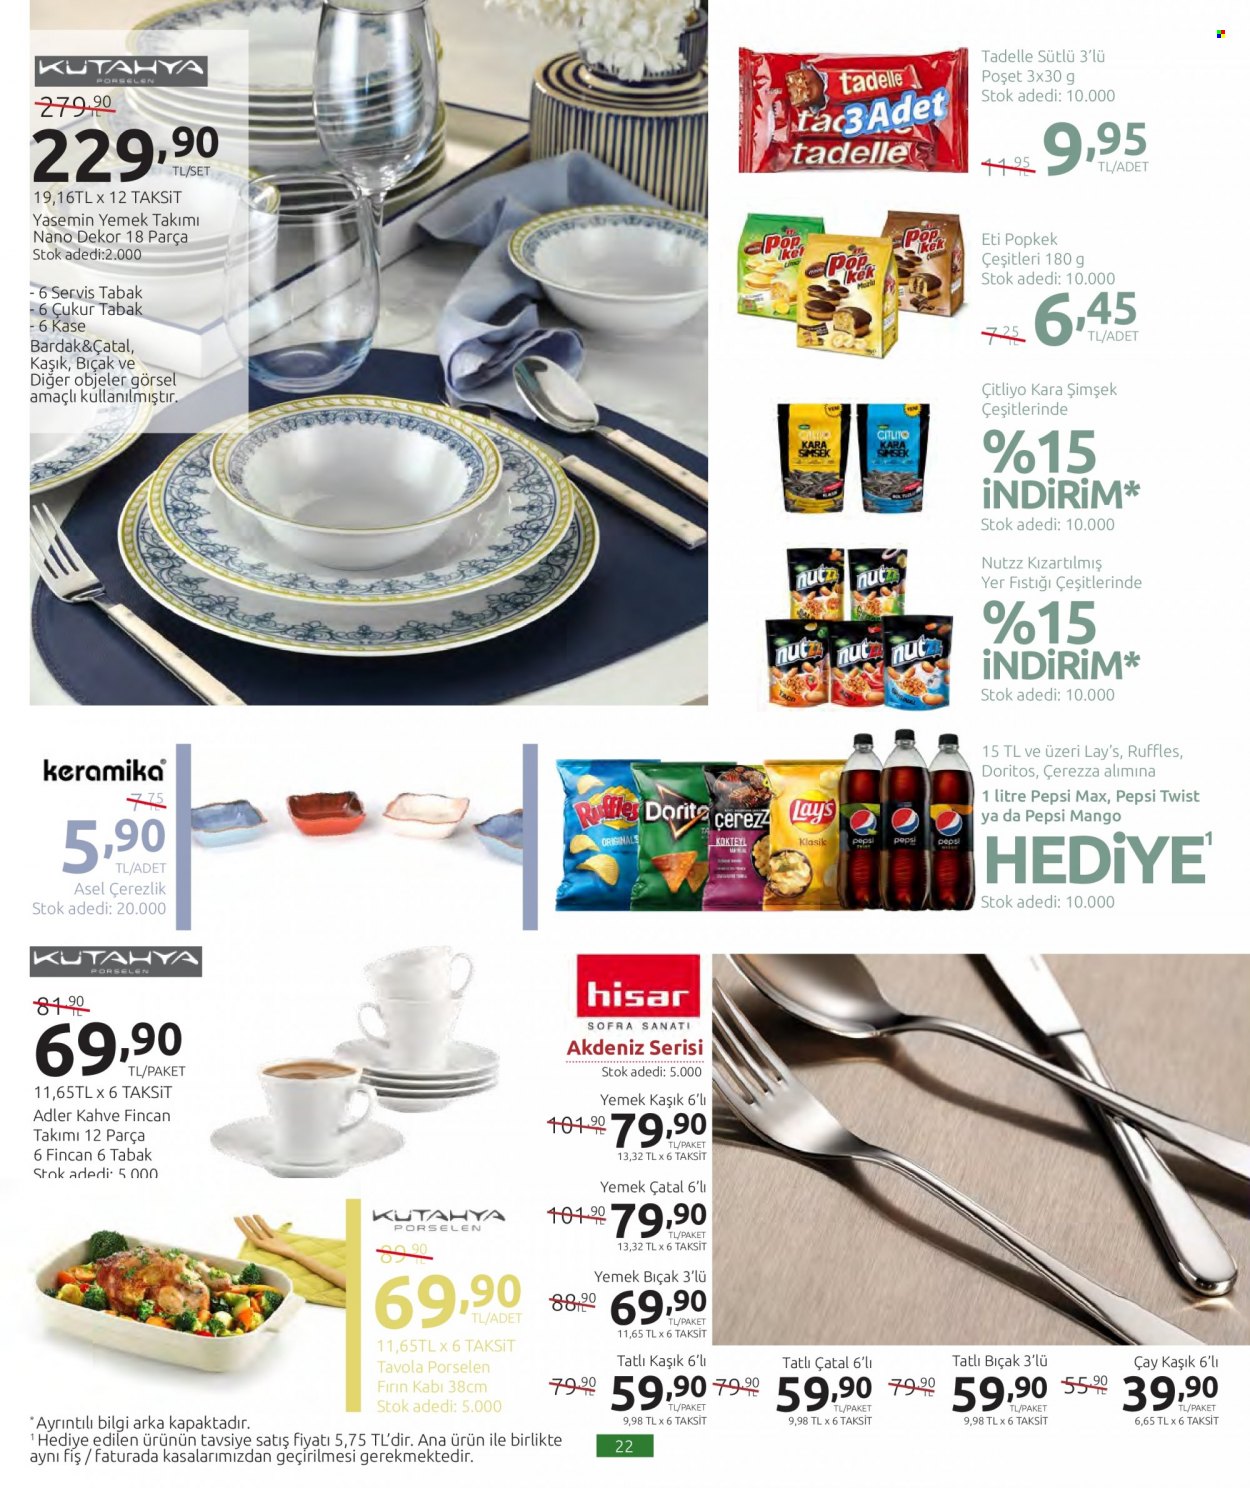 thumbnail - Carrefour aktüel ürünler, broşür  - 12.1.2021 - 12.16.2021 - Satıştaki ürünler - mango, Nutzz, çay, kahve. Sayfa 22.